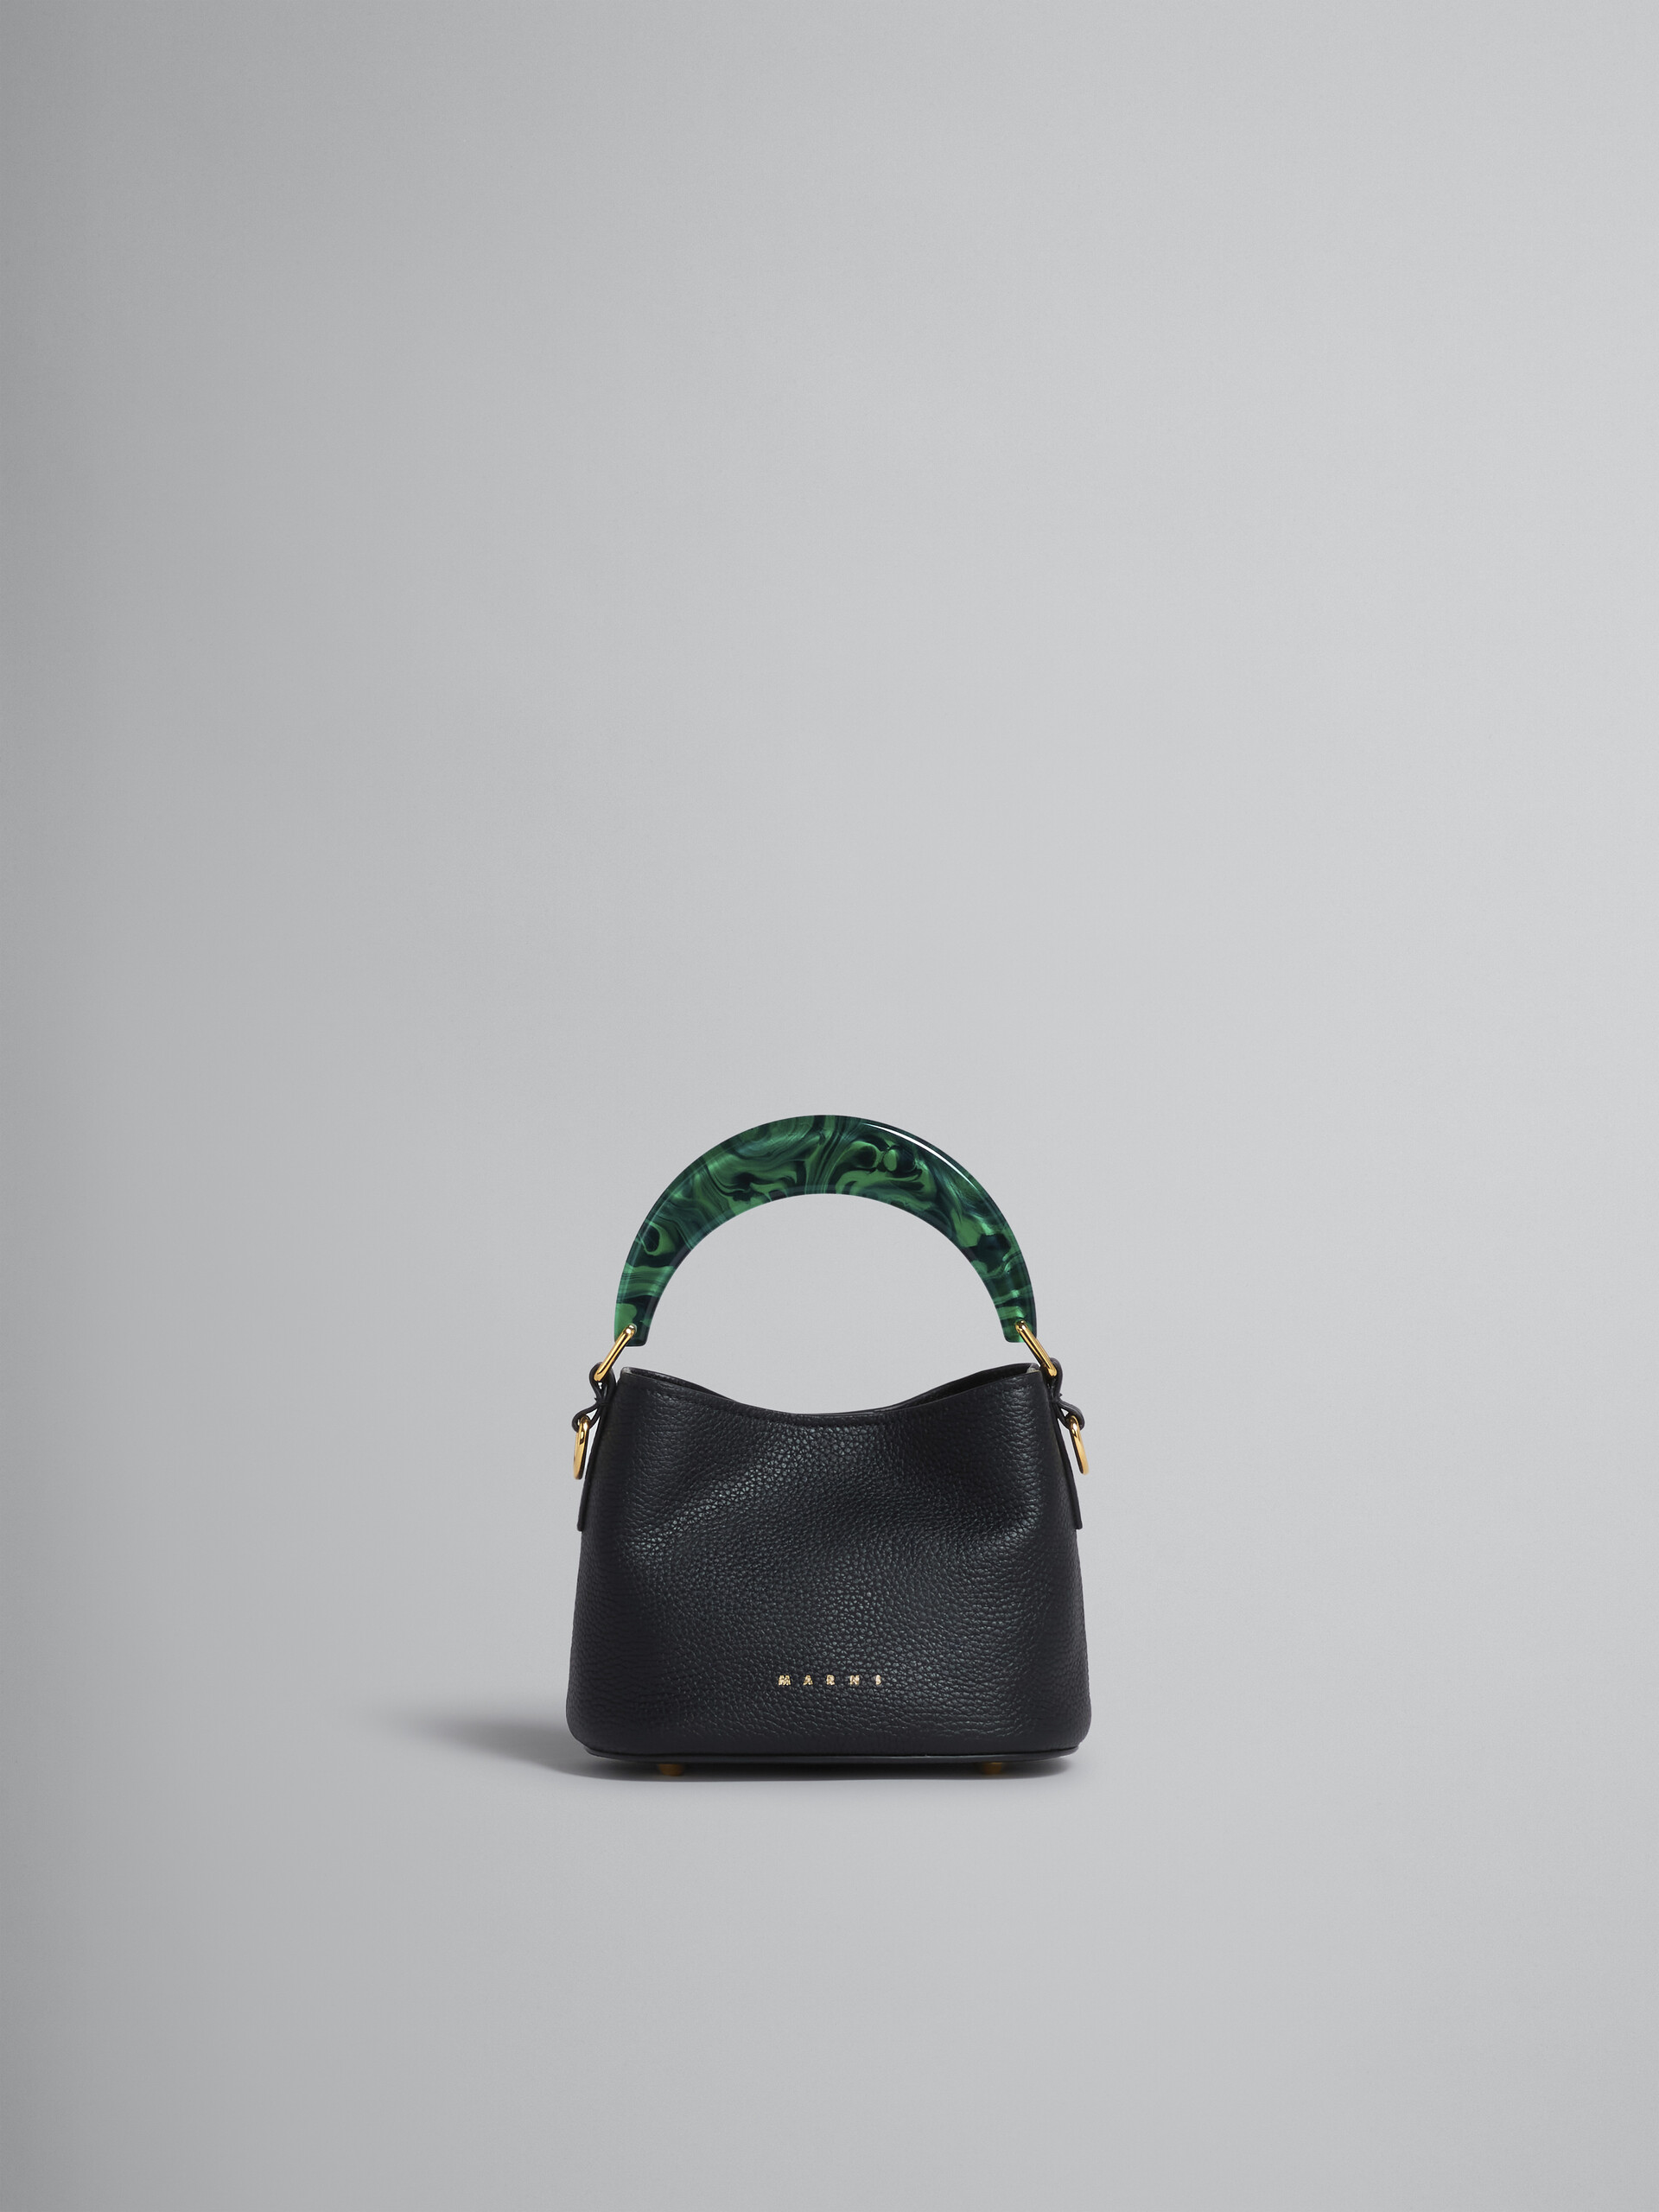 Venice Mini Bucket Bag in black leather - Shoulder Bag - Image 1